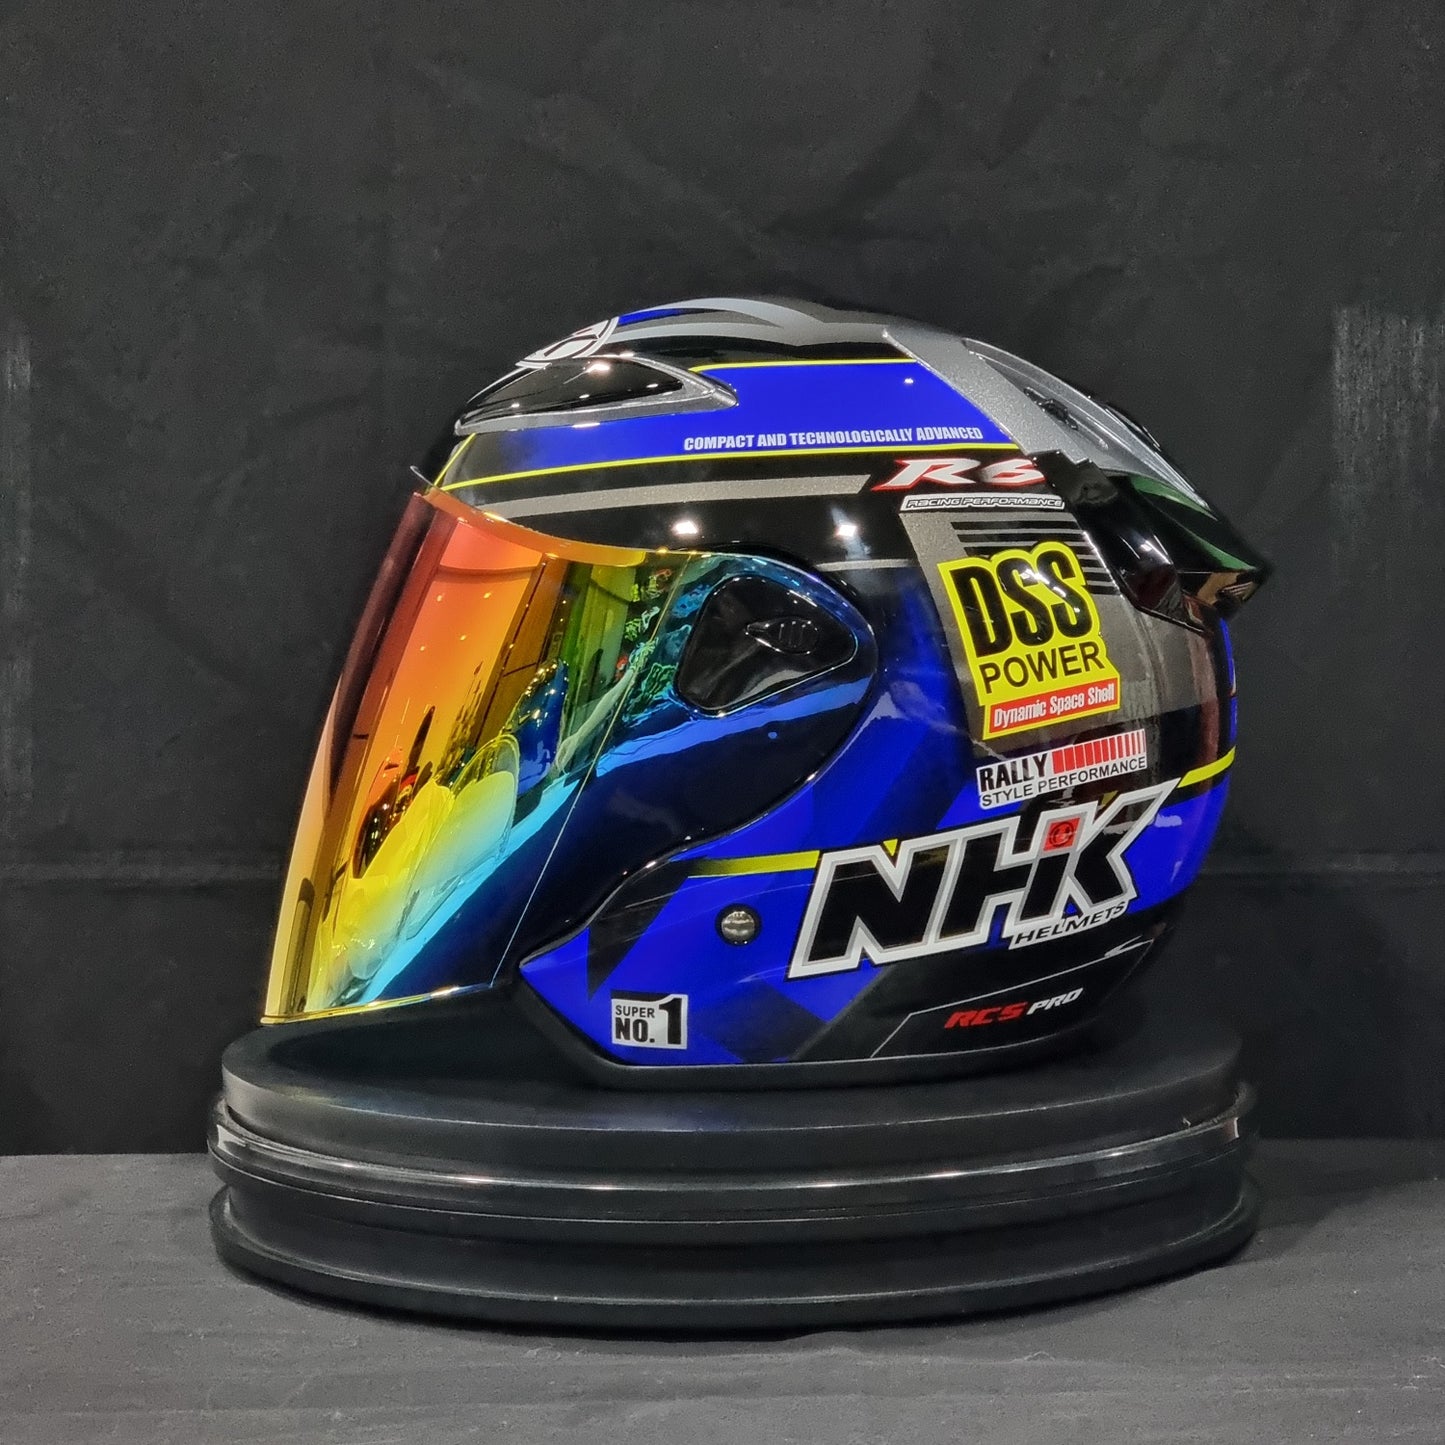 NHK Helmet R6 v2 Rally (Black/Blue Glossy)